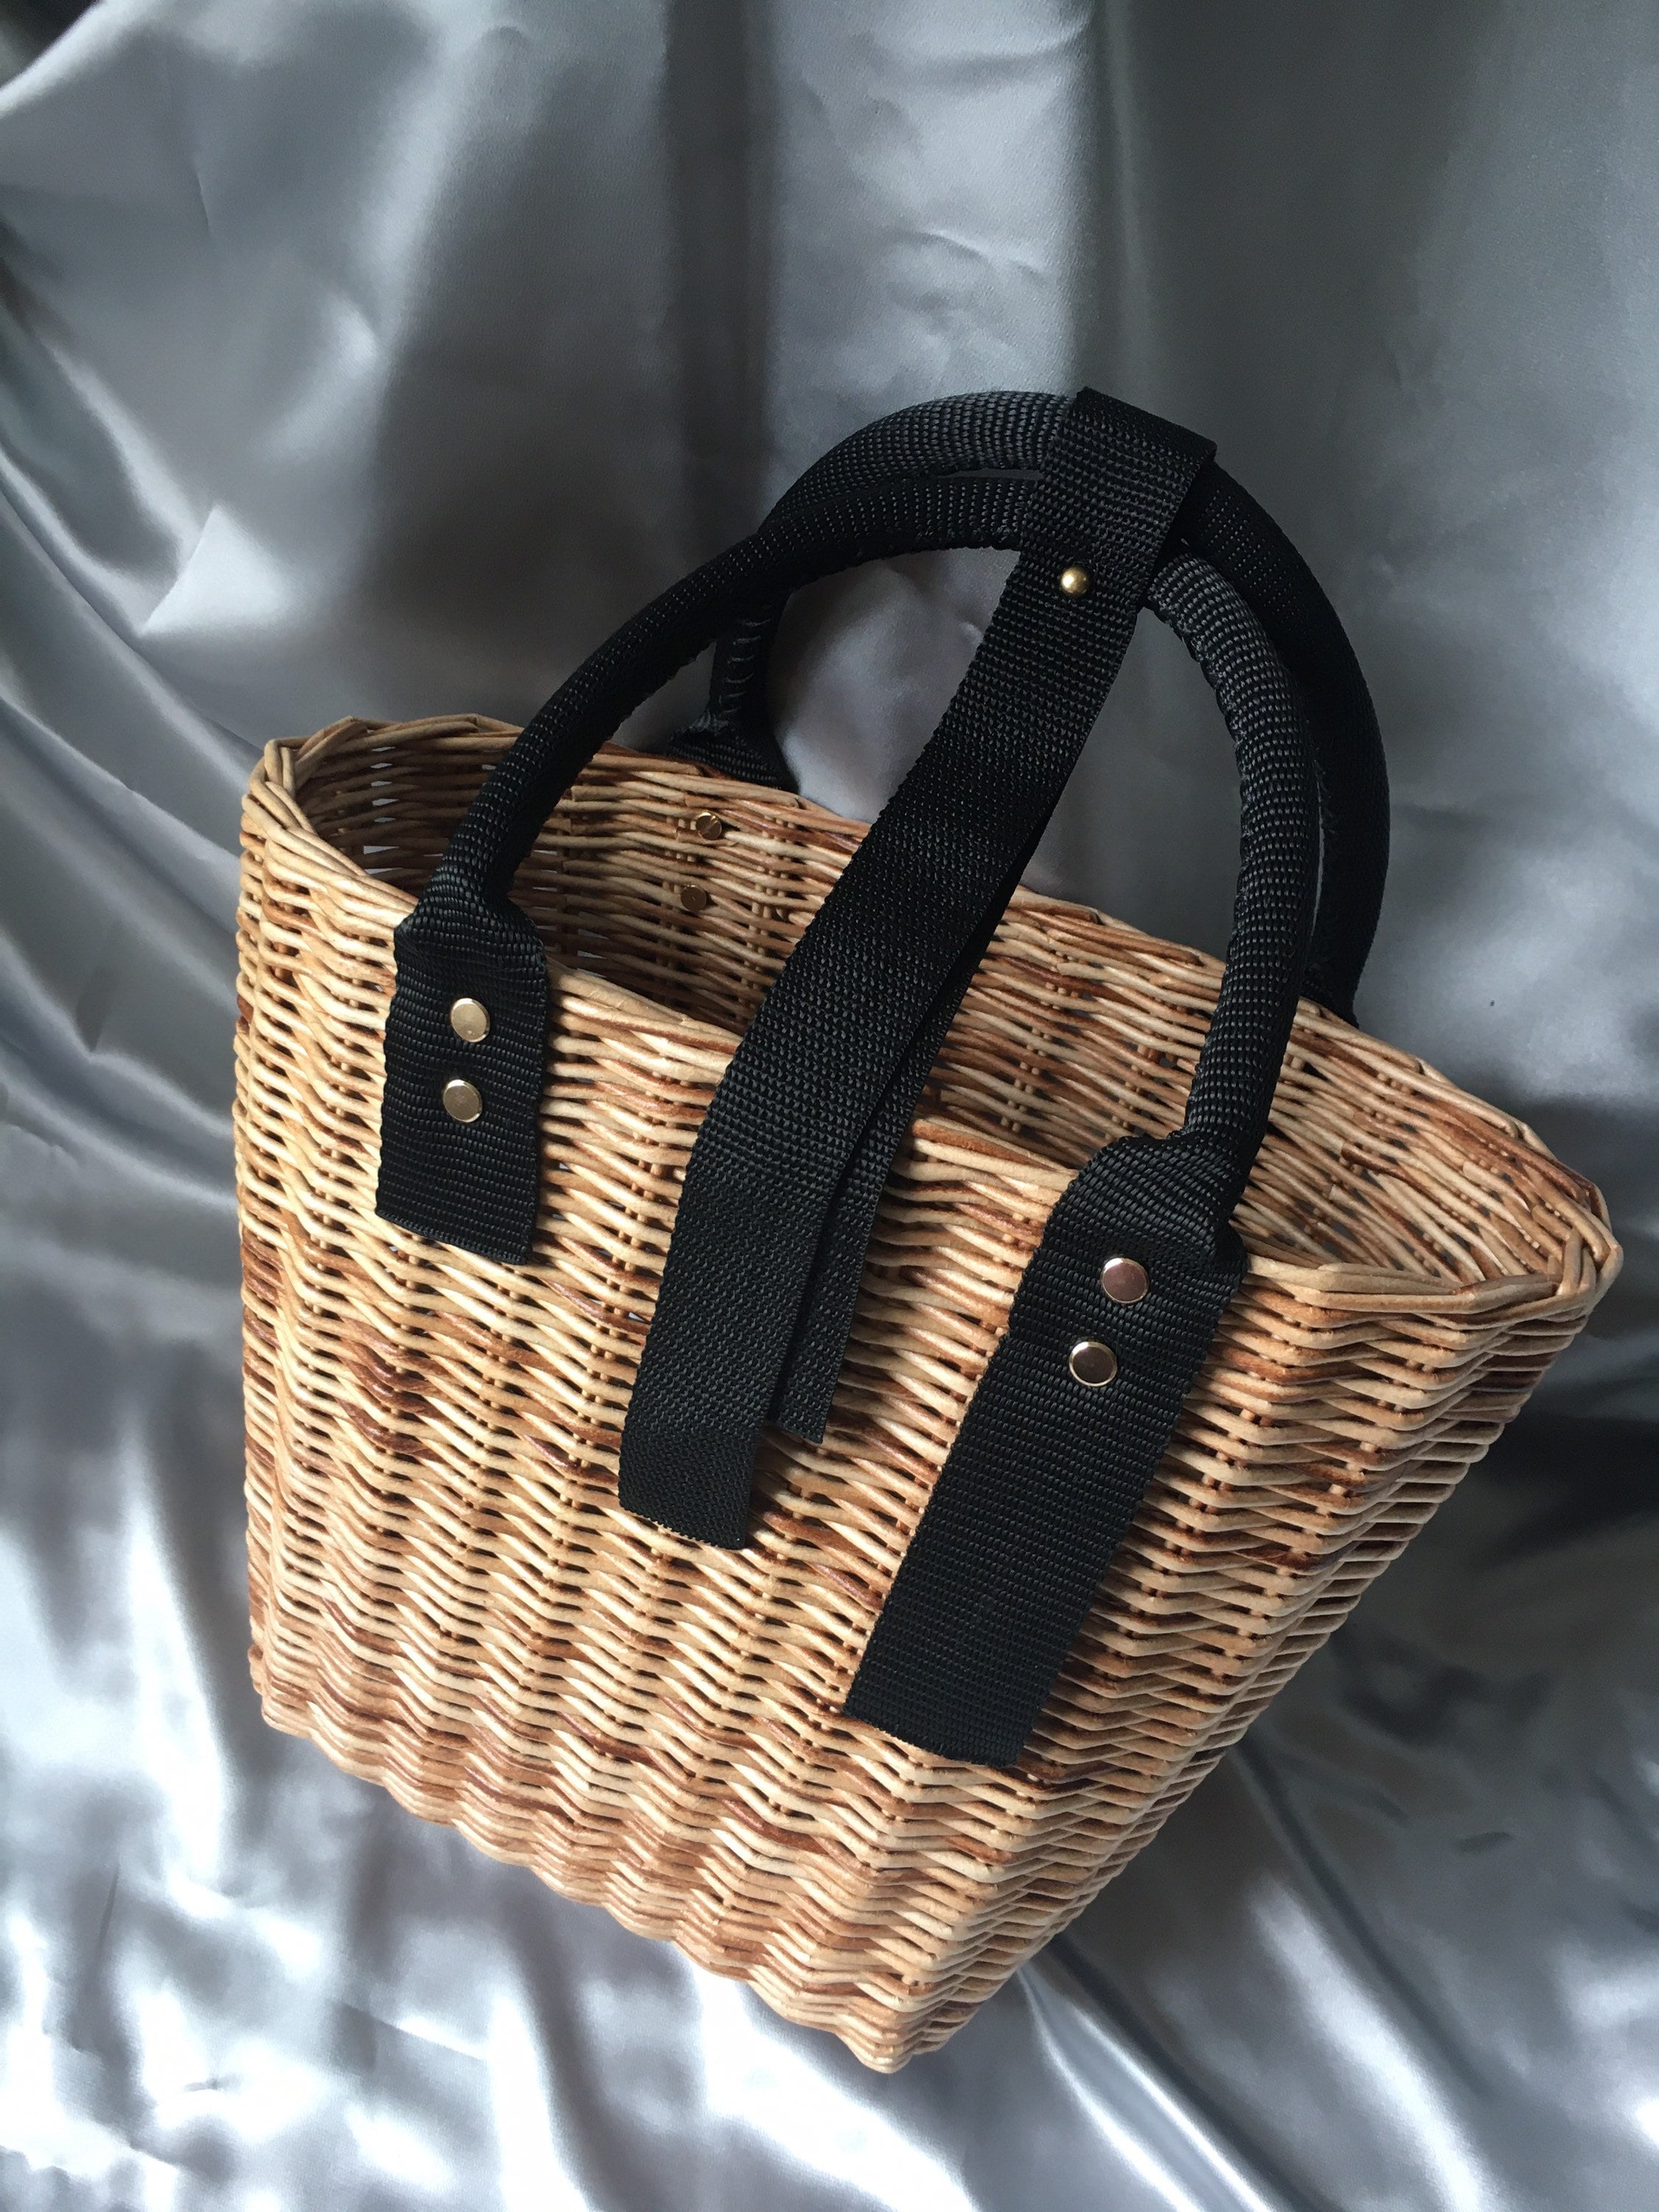 Buy Jane Birkin Style Wicker Basket Panier French Basket Straw Bag